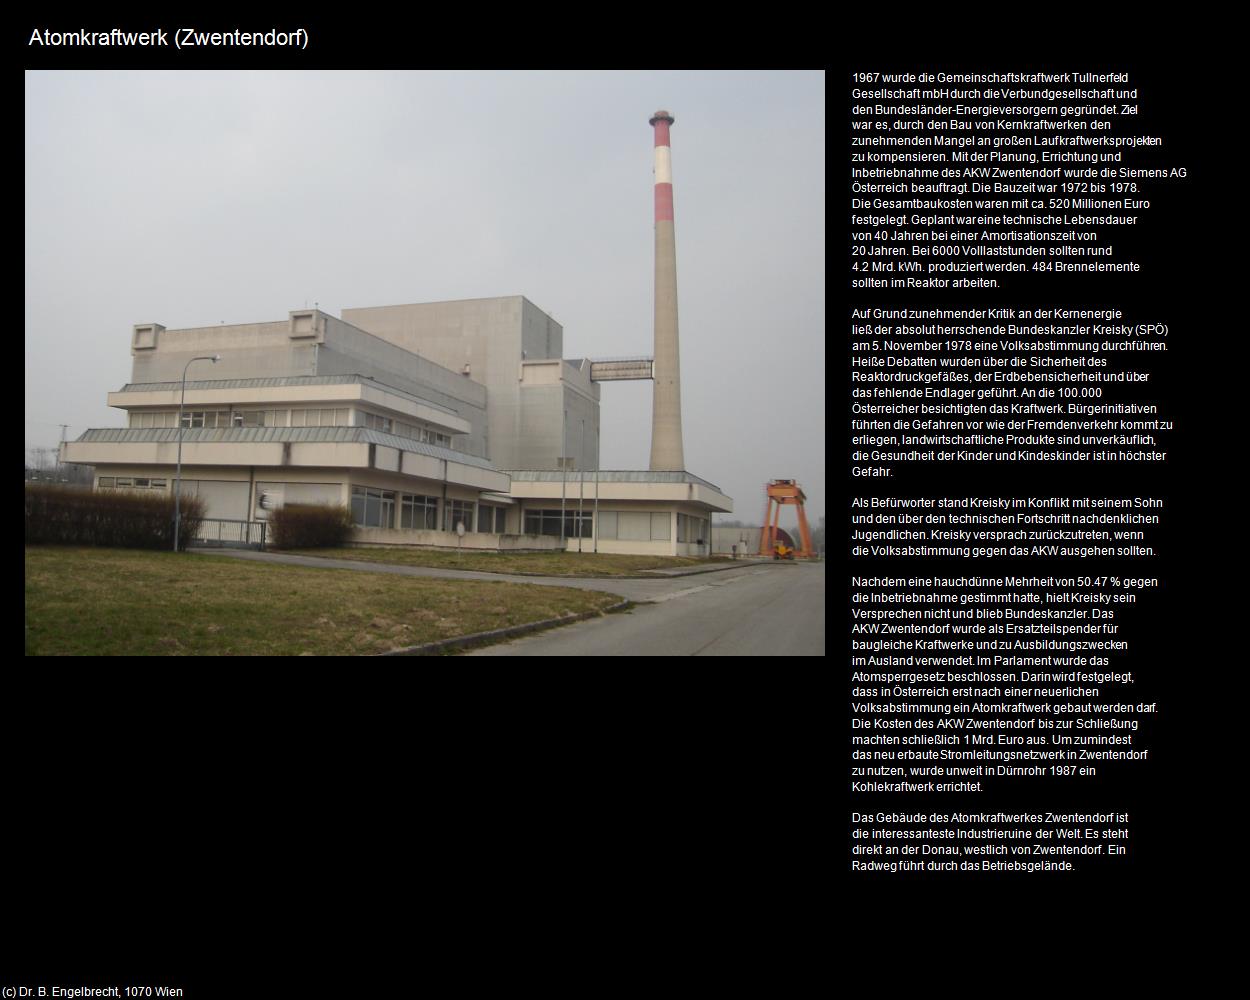 Atomkraftwerk (Zwentendorf an der Donau) in Kulturatlas-NIEDERÖSTERREICH